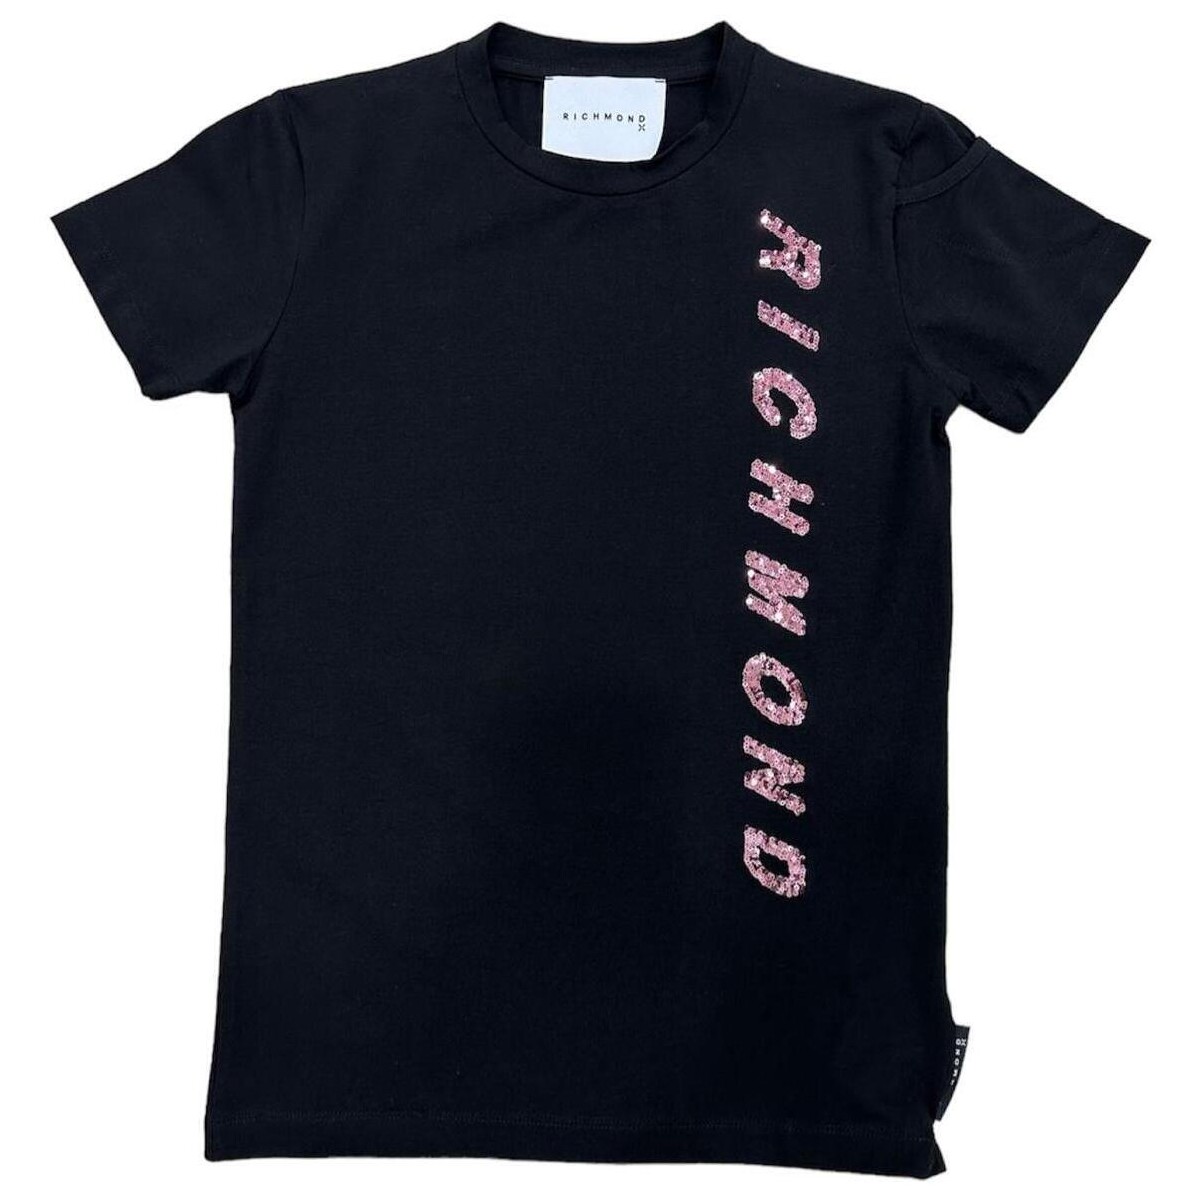 Abbigliamento Donna T-shirt maniche corte Richmond  Nero